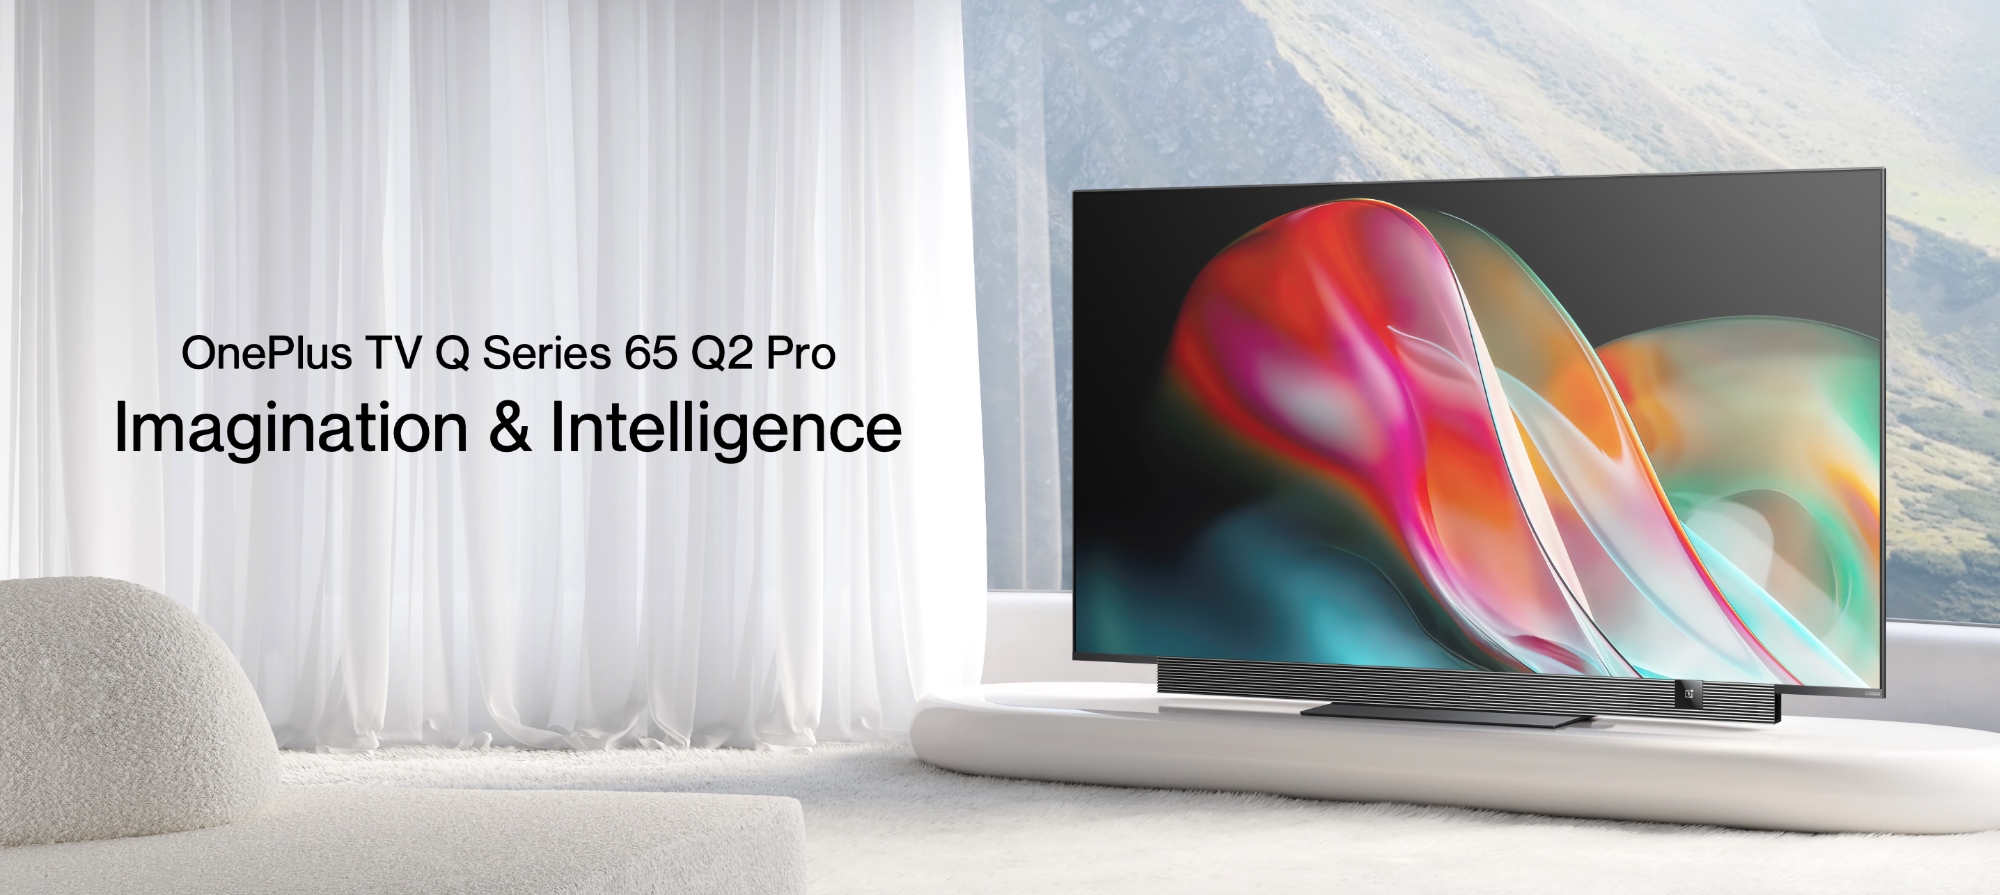 OnePlus TV 65 Q2 Pro: wyświetlacz 4K QLED przy 120 Hz, głośniki 70W, wsparcie dla Dolby Vision i Android TV za 1209 dolarów.